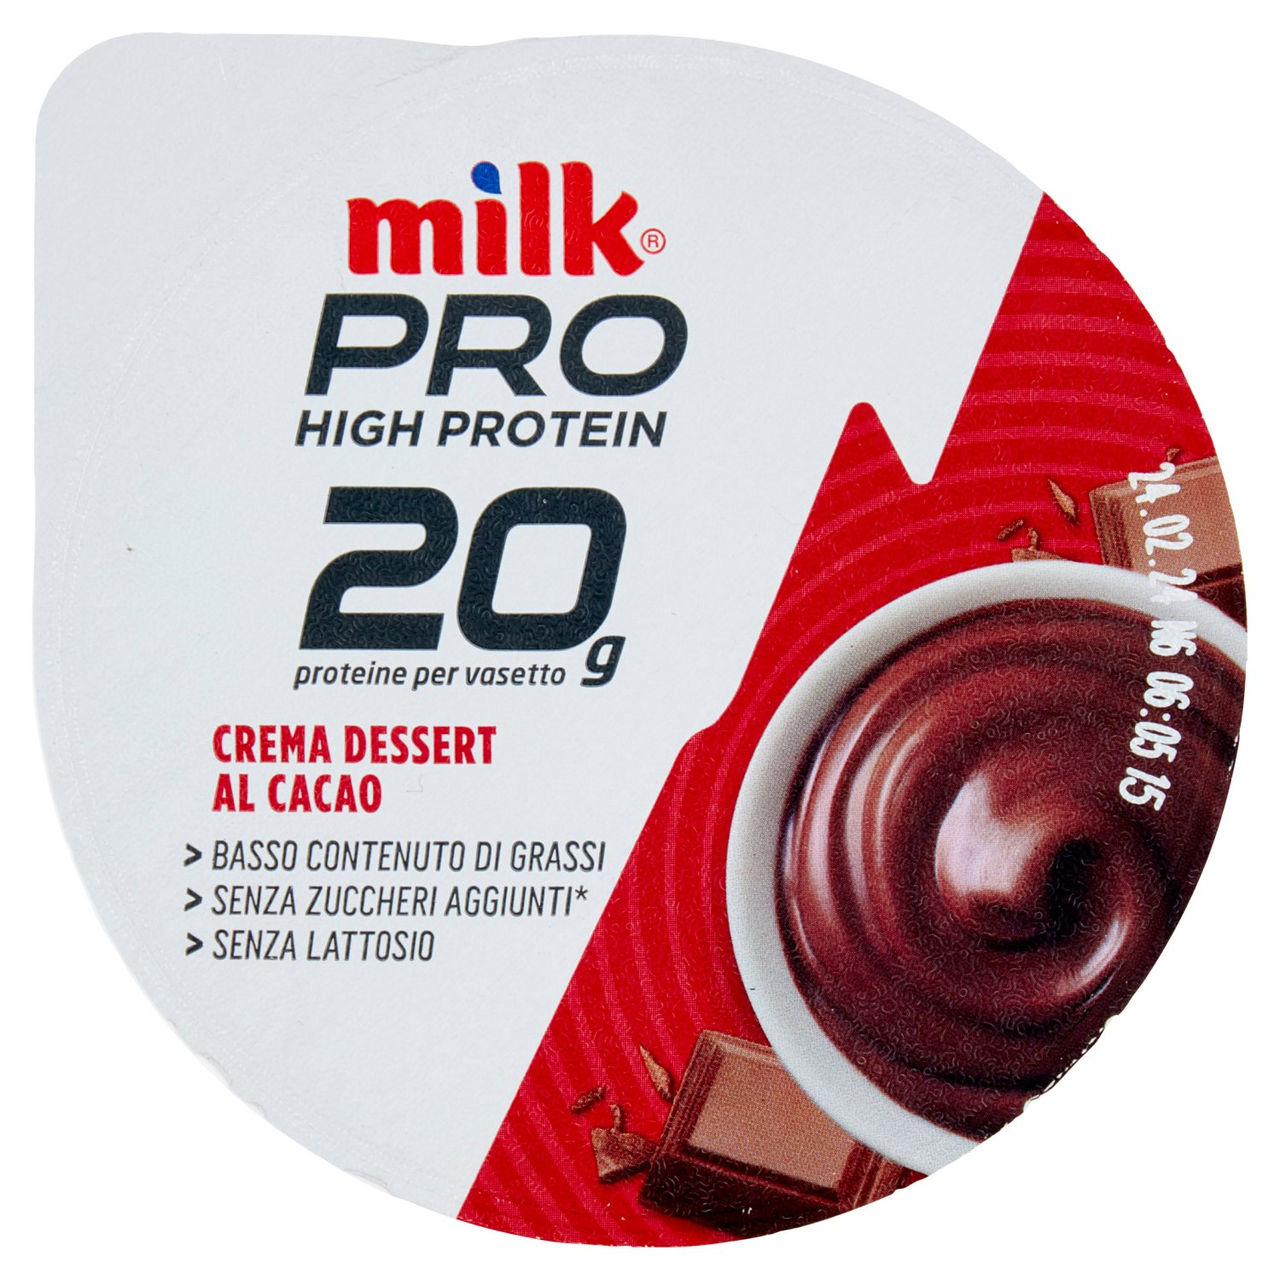 Milk Pro High Protein Crema Dessert Cacao online